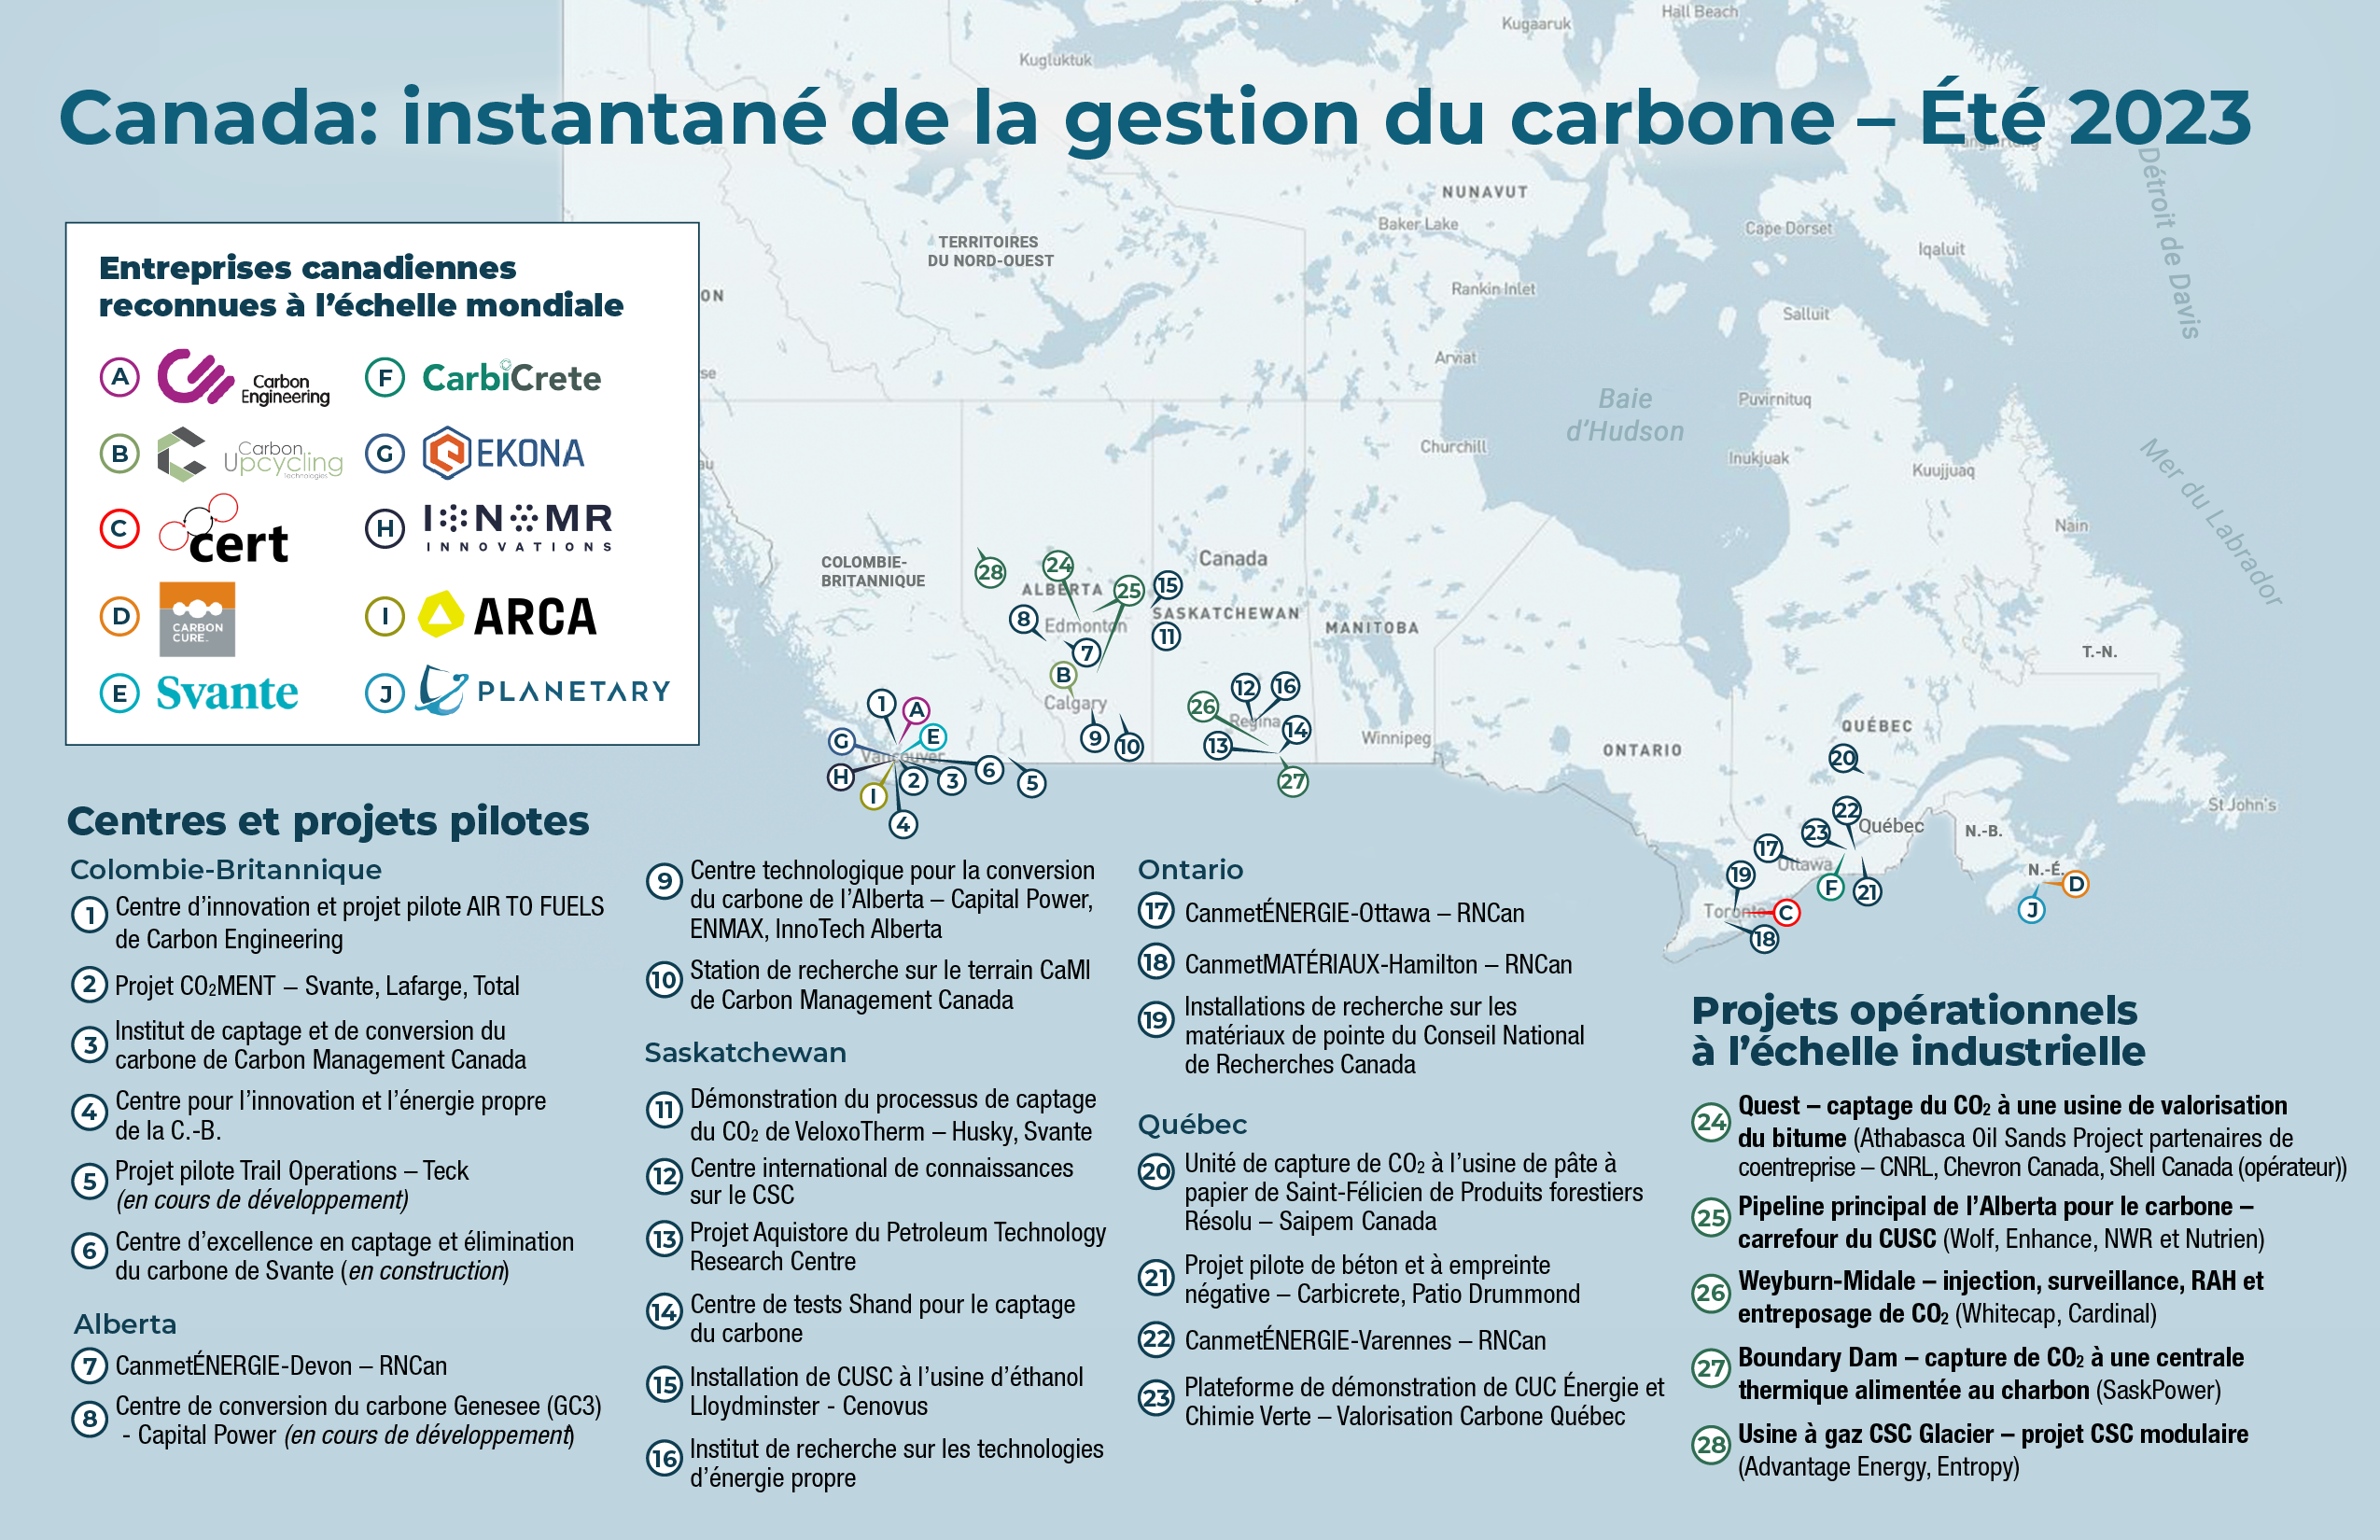 Aperçu de la carte du Canada (dernière mise à jour à l’été 2023) qui montre l’emplacement des centres de gestion du carbone, les projets pilote, les projets commerciaux en activité et les sociétés canadiennes de gestion du carbone reconnues mondialement.